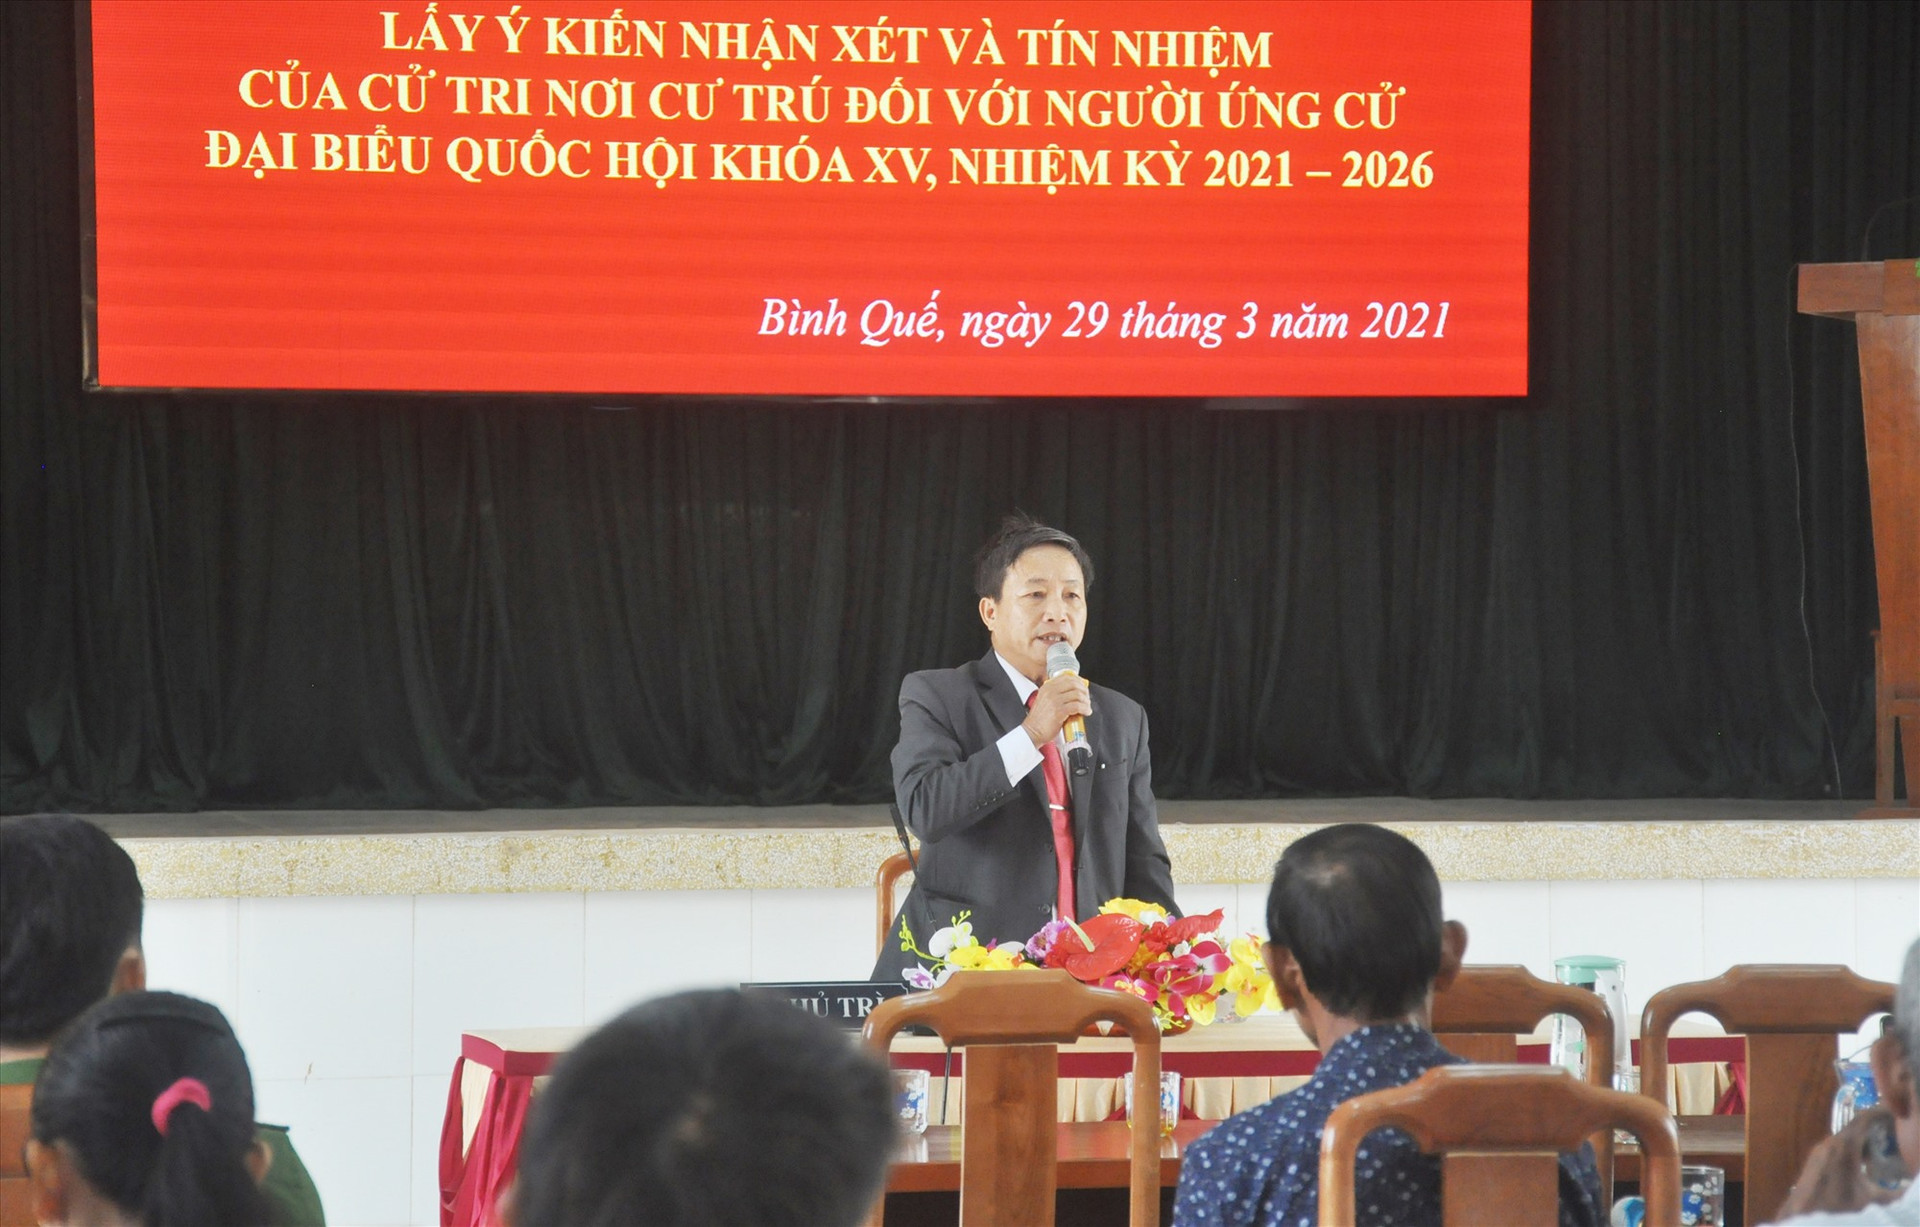 Đại diện Ban Thường trực Ủy ban MTTQ Việt Nam xã Bình Quế chủ trì hội nghị lấy ý kiến nhận xét và tín nhiệm của cử tri nơi cư trú đối với người ứng cử ĐBQH khóa XV. Ảnh: N.Đ